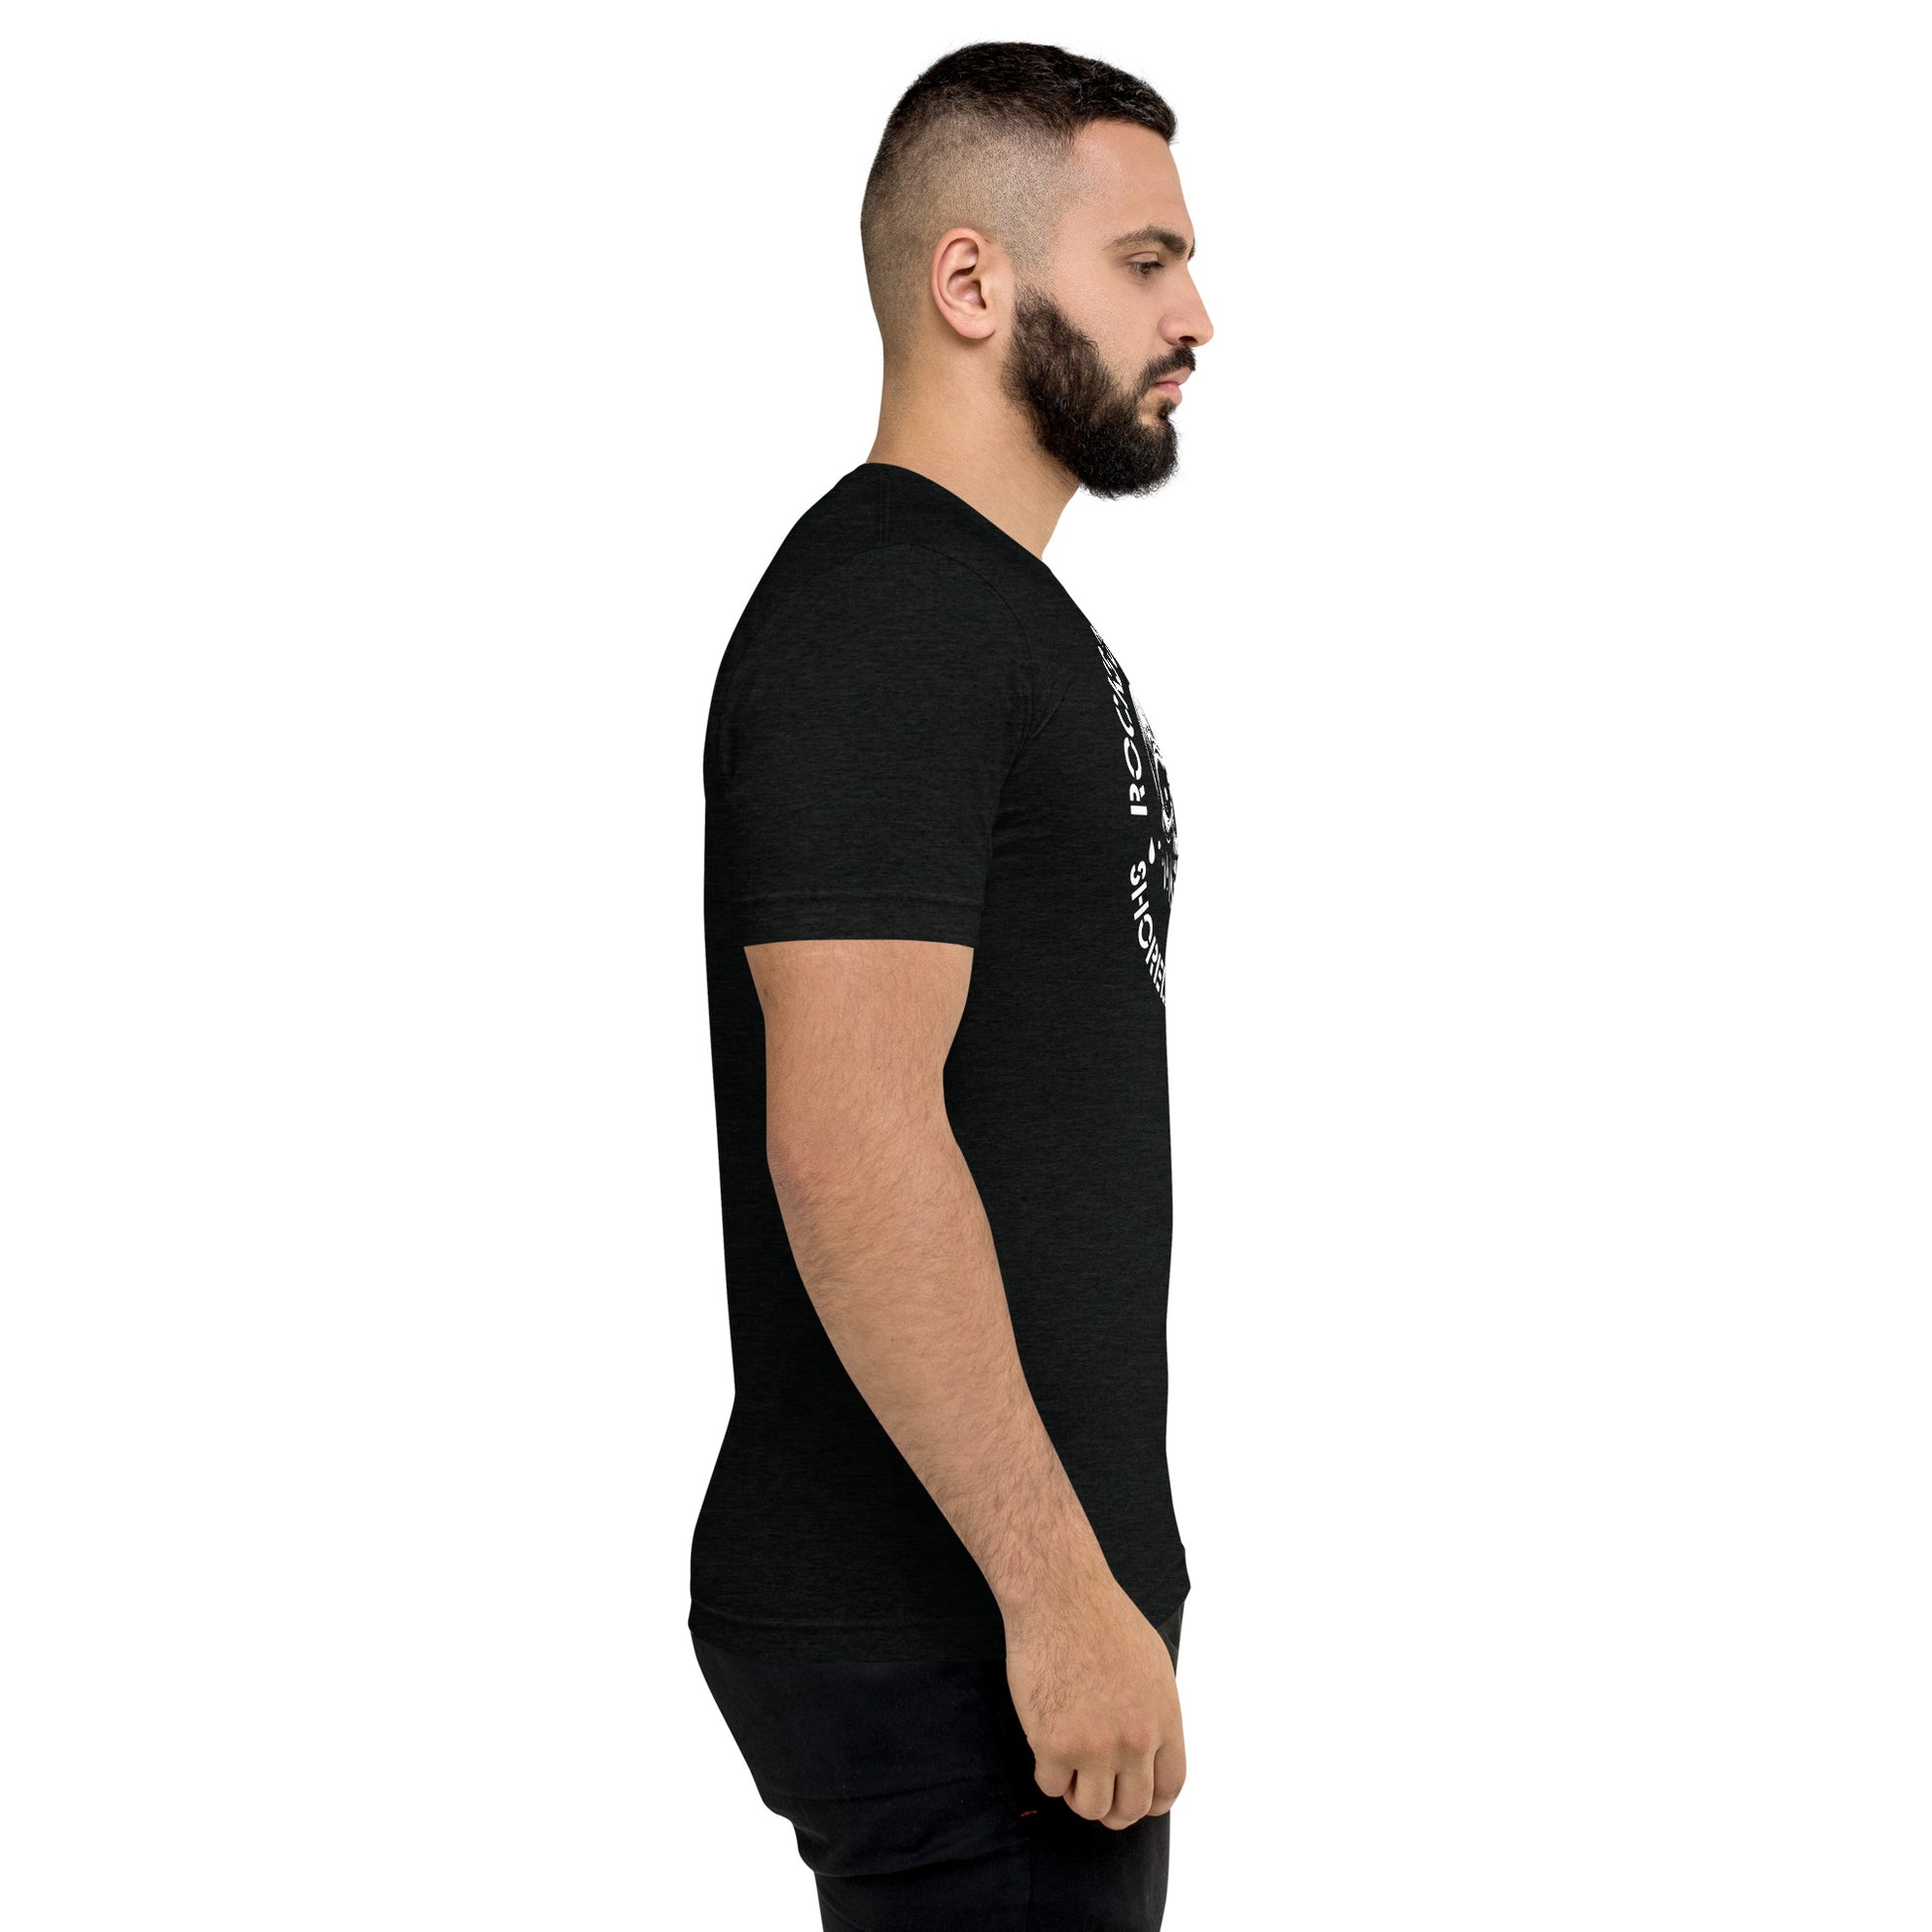 a man with a beard wearing a black shirt